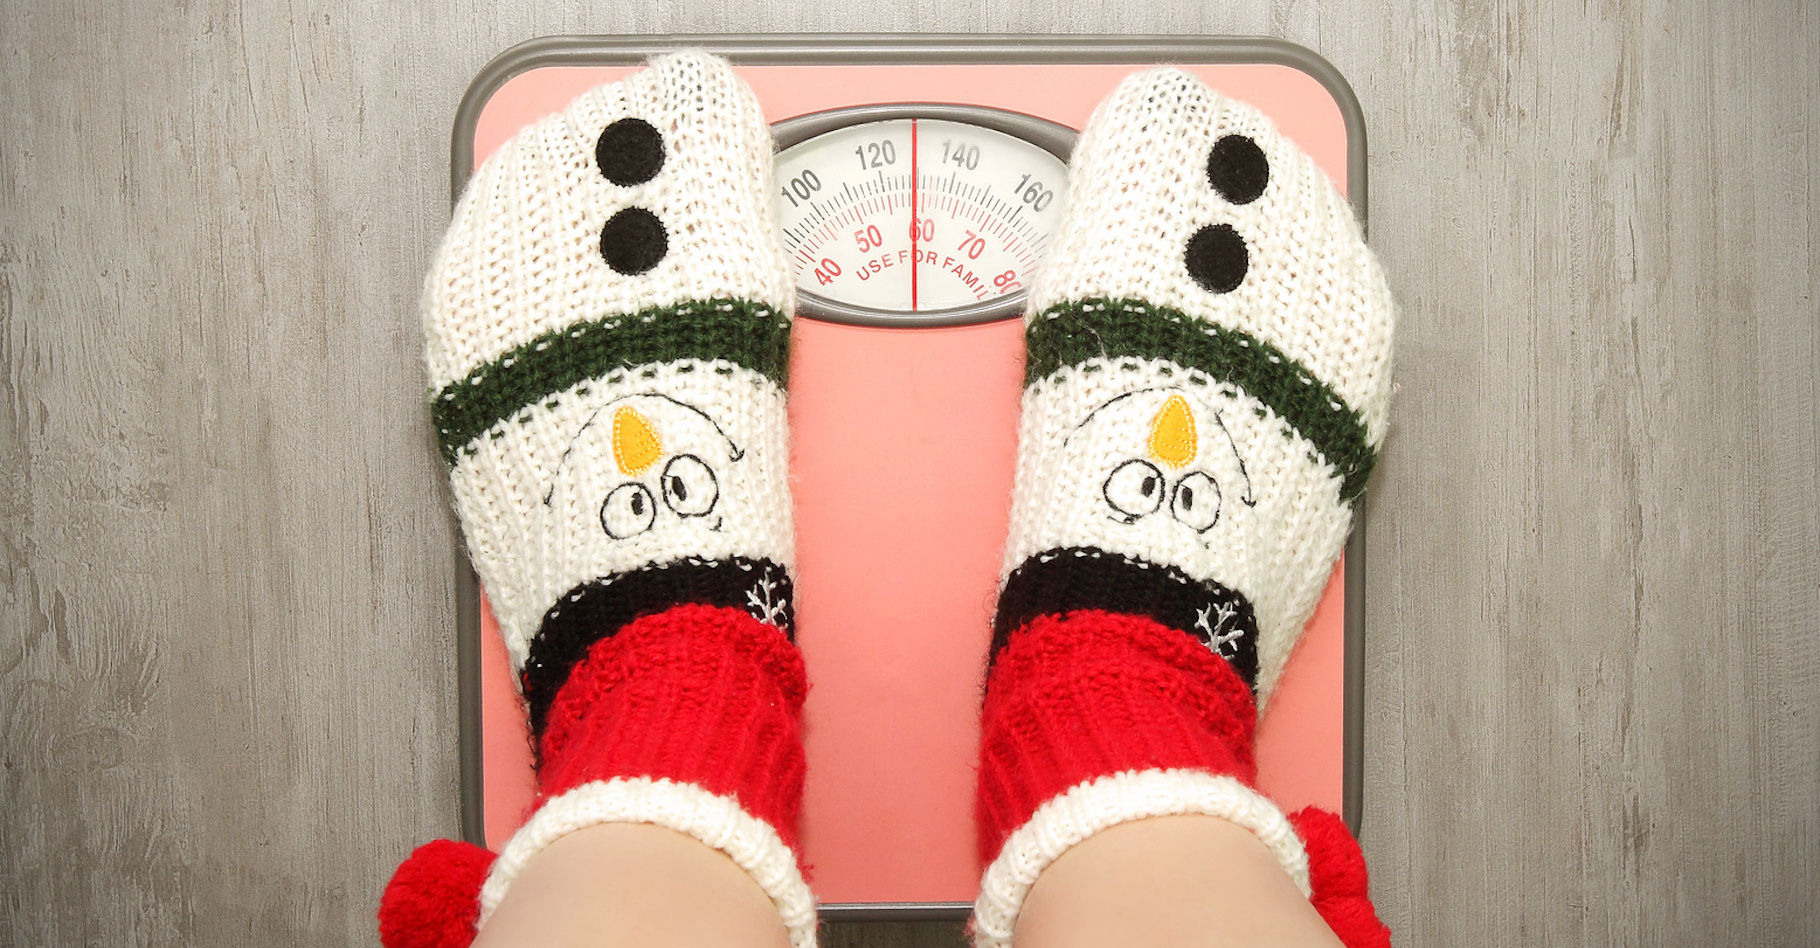 Même en hiver, il faut éviter de manger trop gras sous peine de prendre quelques kilos. © Anna81, Fotolia